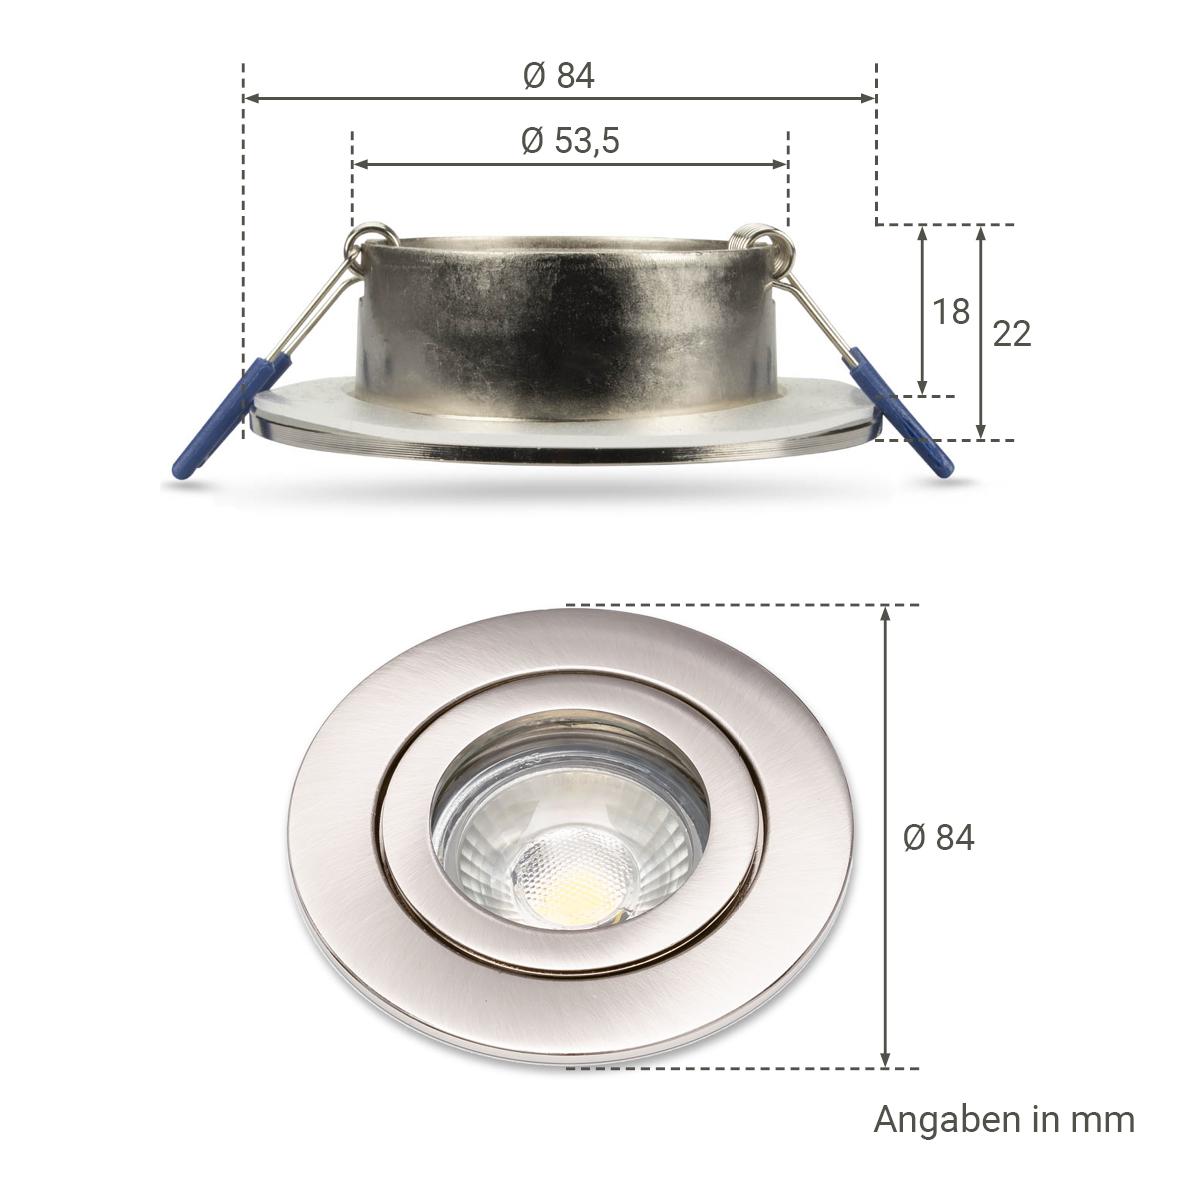 Einbauspot IP44 rund - Farbe: Edelstahl gebürstet - LED Leuchtmittel: GU10 5W neutralweiß dimmbar